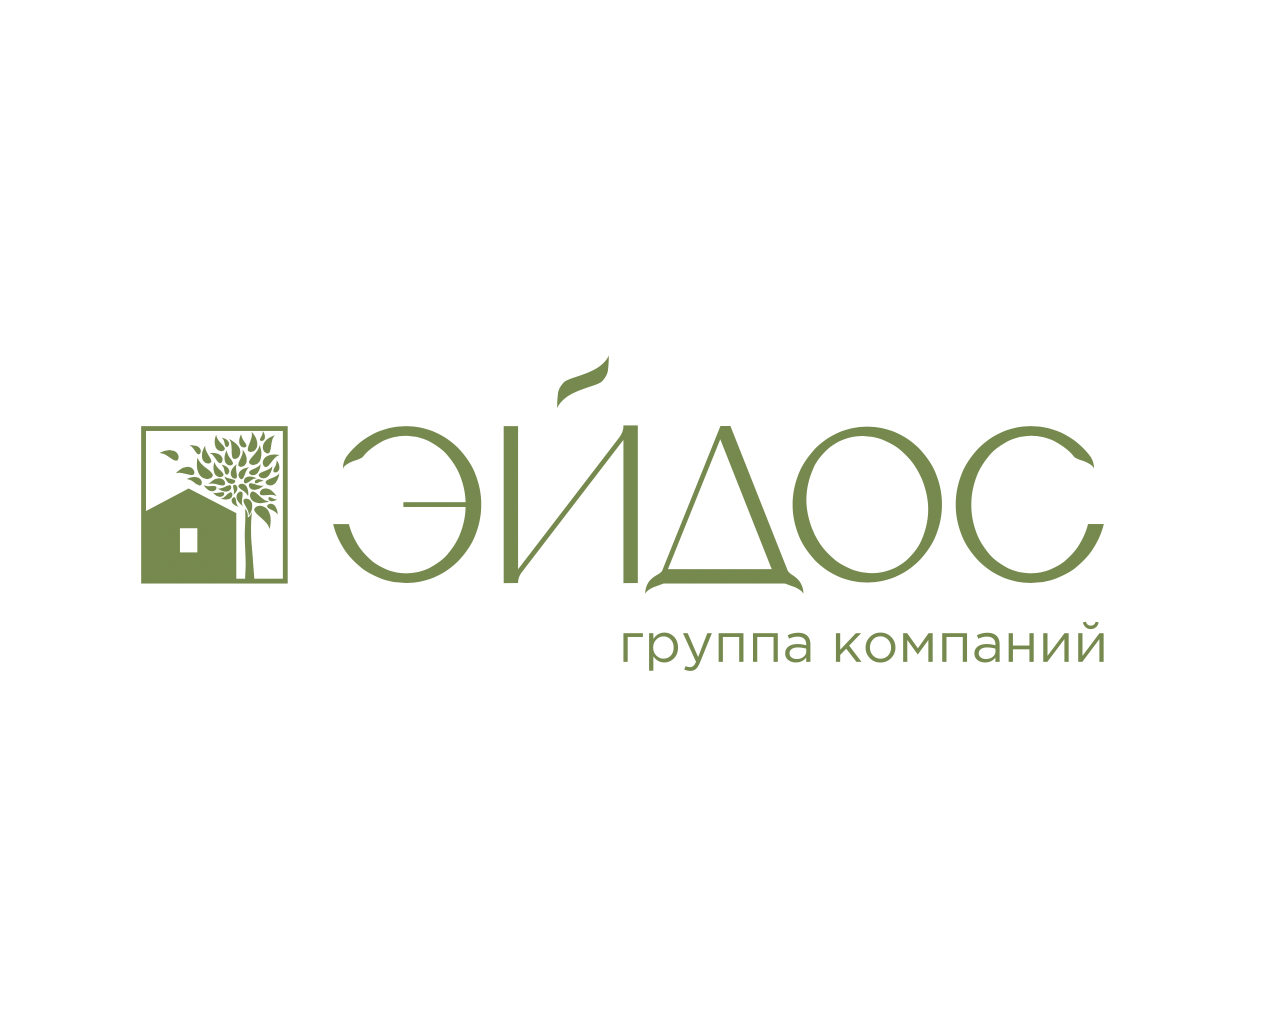 Eidos logo. 1 development ru